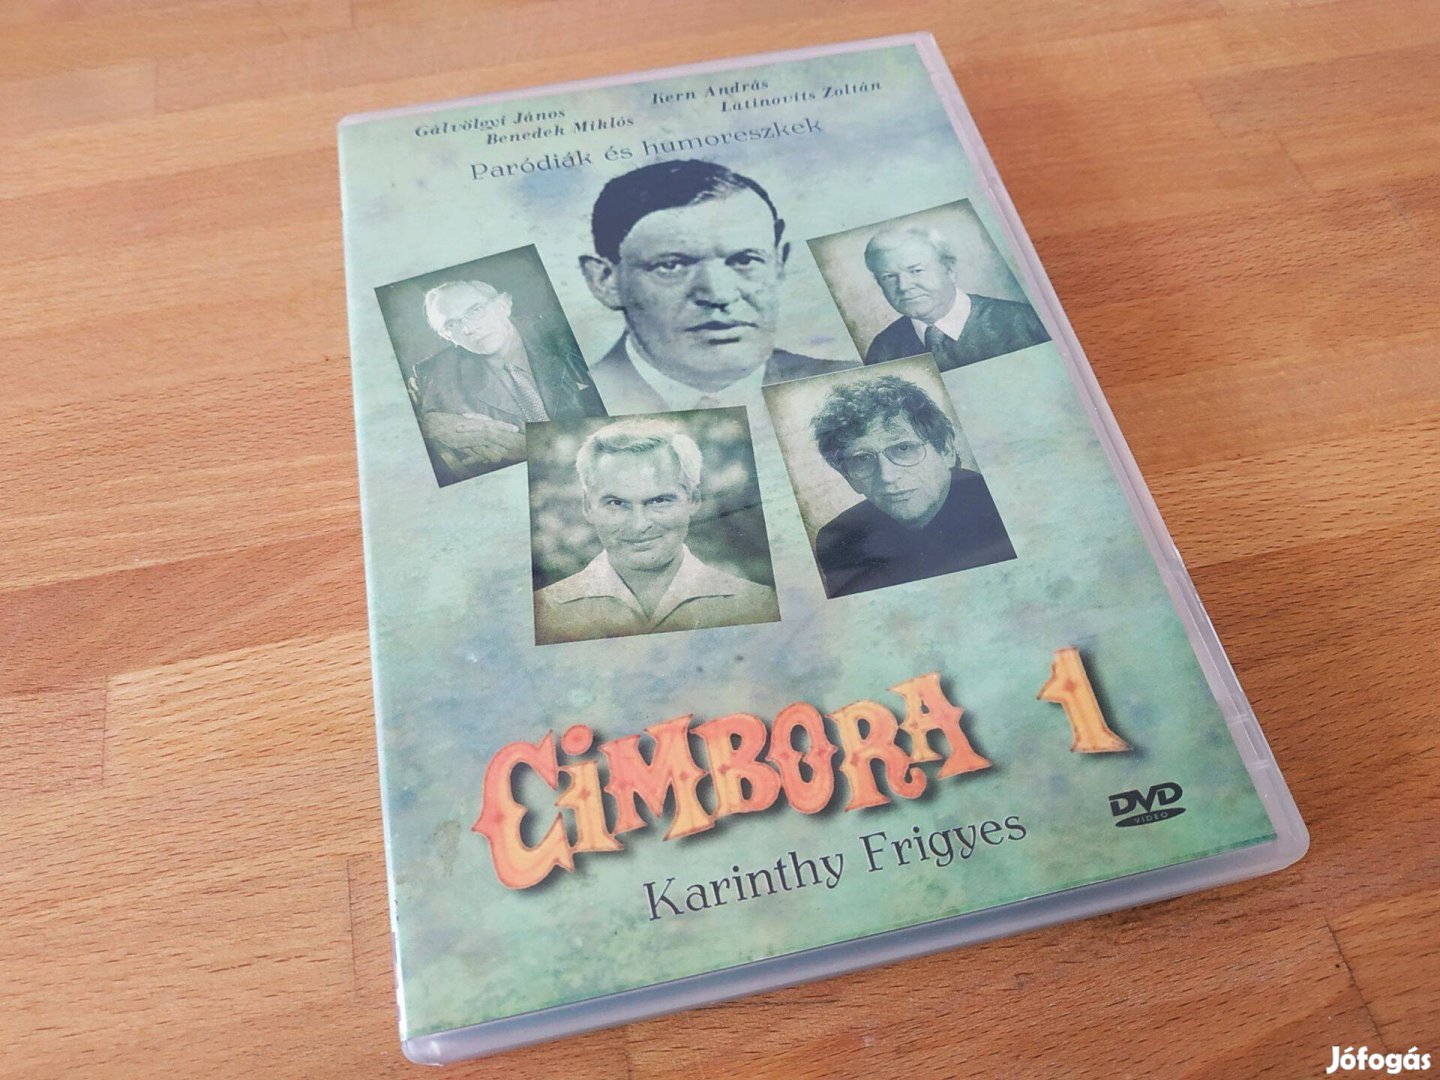 Paródiák és humoreszkek - Cimbora 1. - Karinthy Frigyes (61p, DVD)